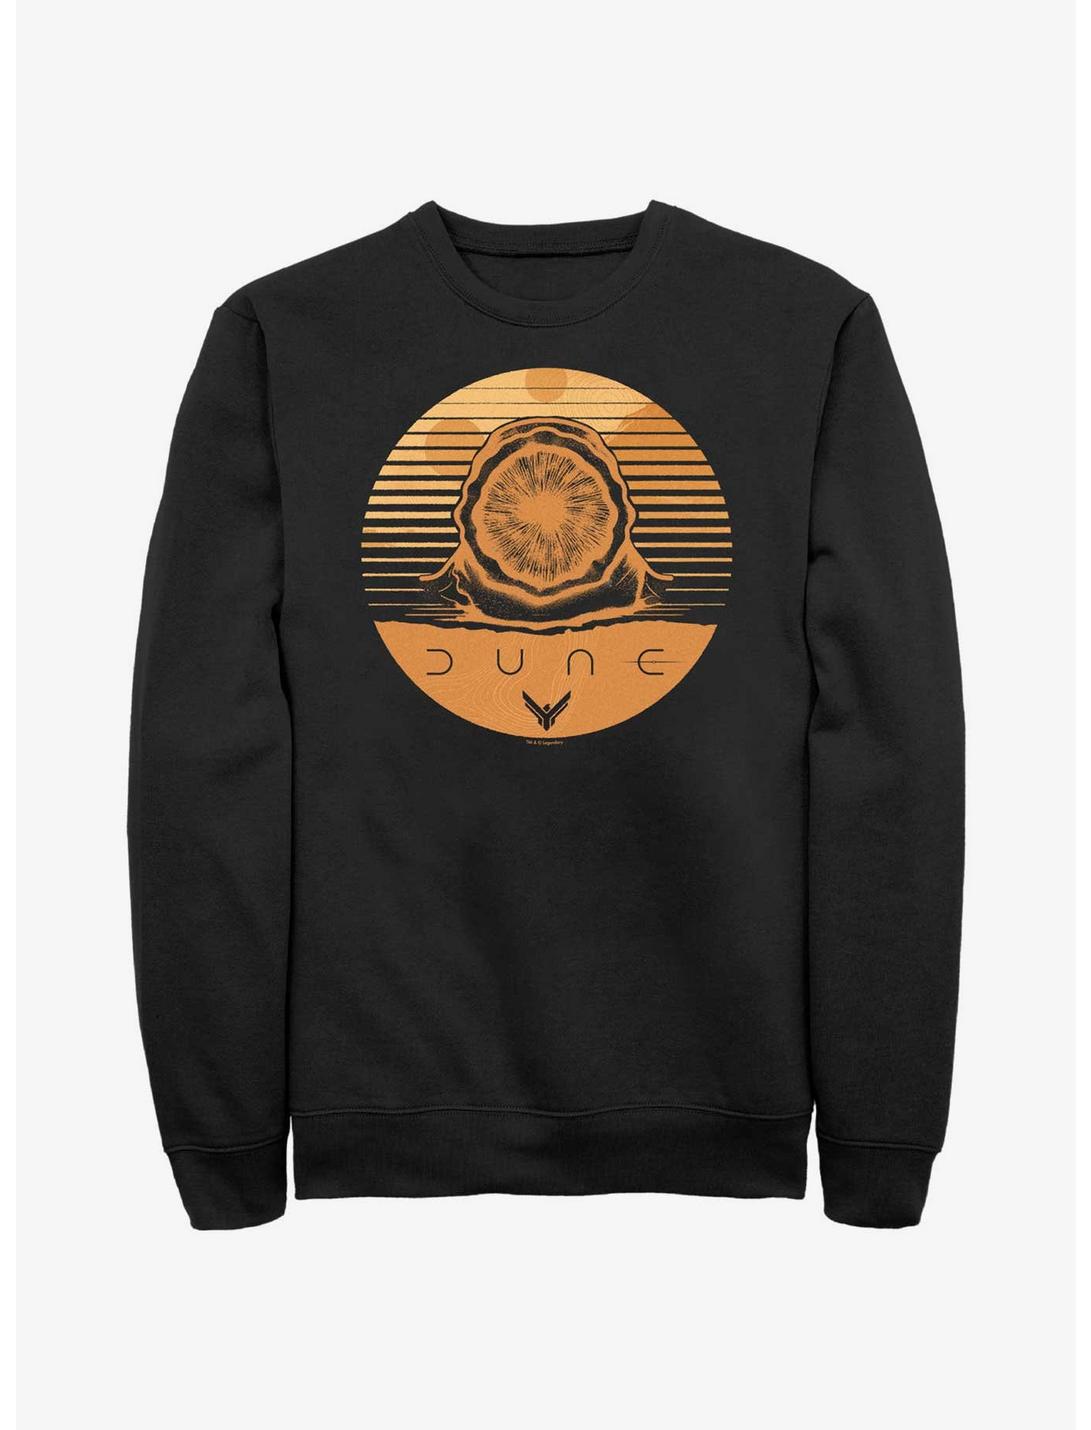 Dune Arrakis Sandworm Stamp Sweatshirt, BLACK, hi-res